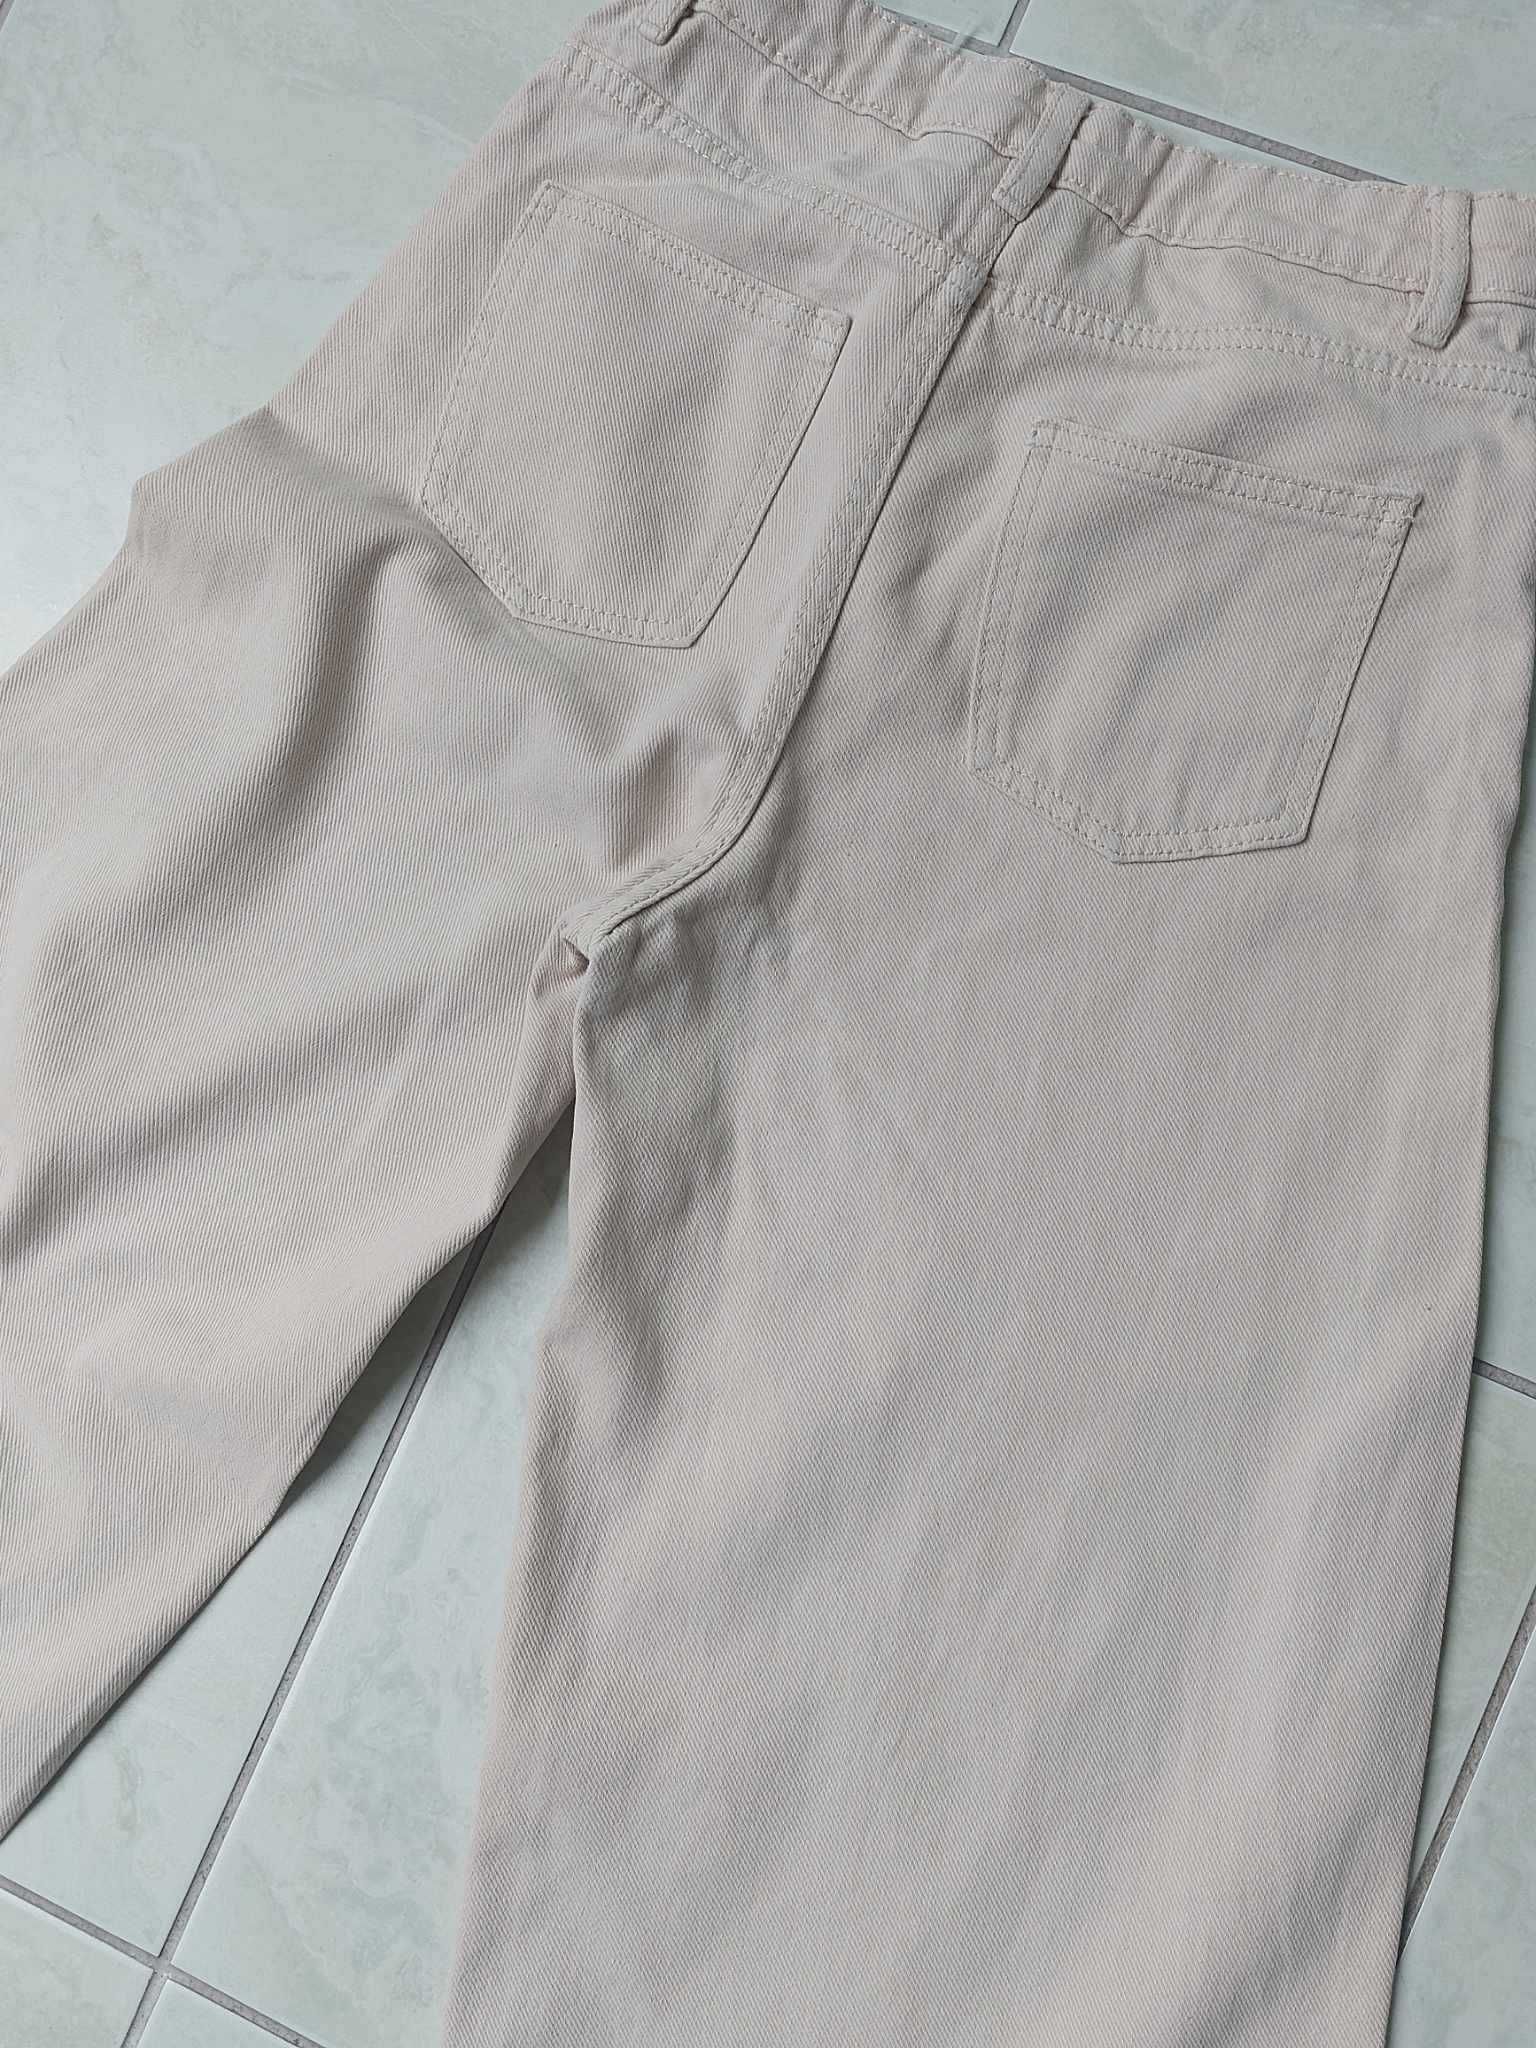 Spodnie jeansowe beżowe szerokie r. 152, Cool Club, bdb